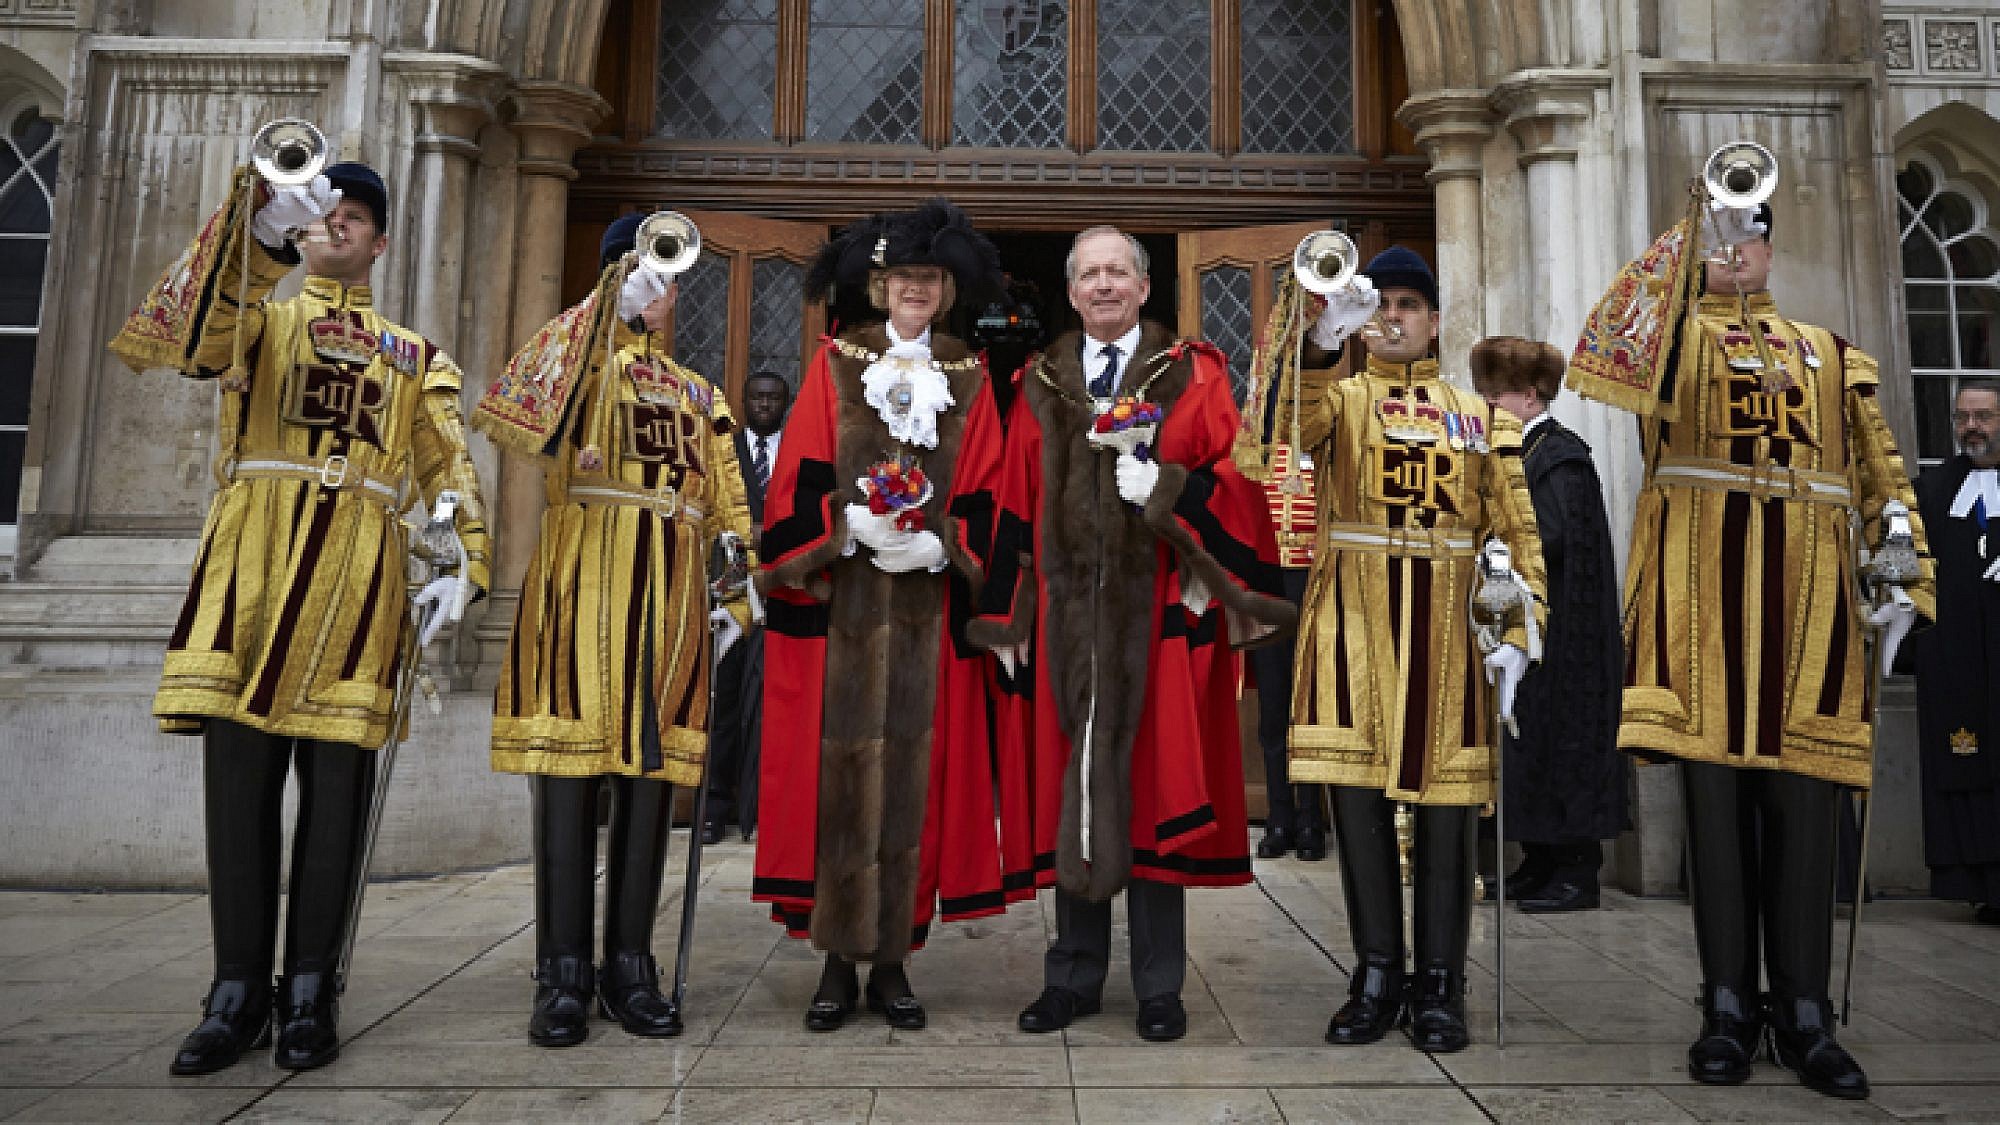 פיונה וולף, הלורד ראש העיר הנוכחית, לצד אלן יארו לורד ראש העיר החדש לשנים 2015-2014. צילום: באדיבות www.lordmayorsshow.org